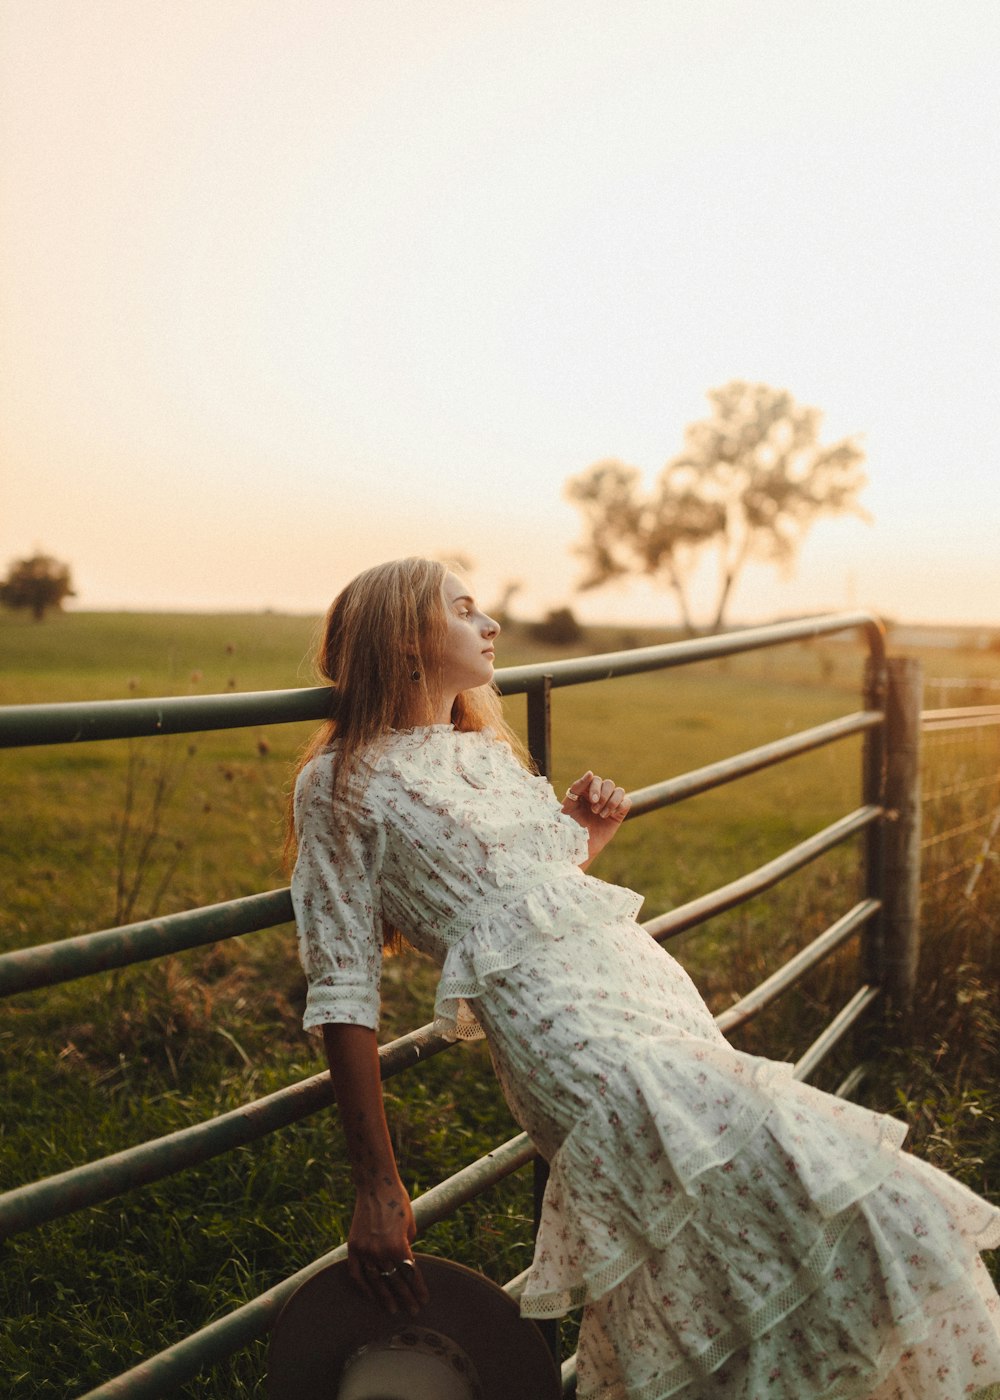 Una mujer con un vestido apoyado en una cerca